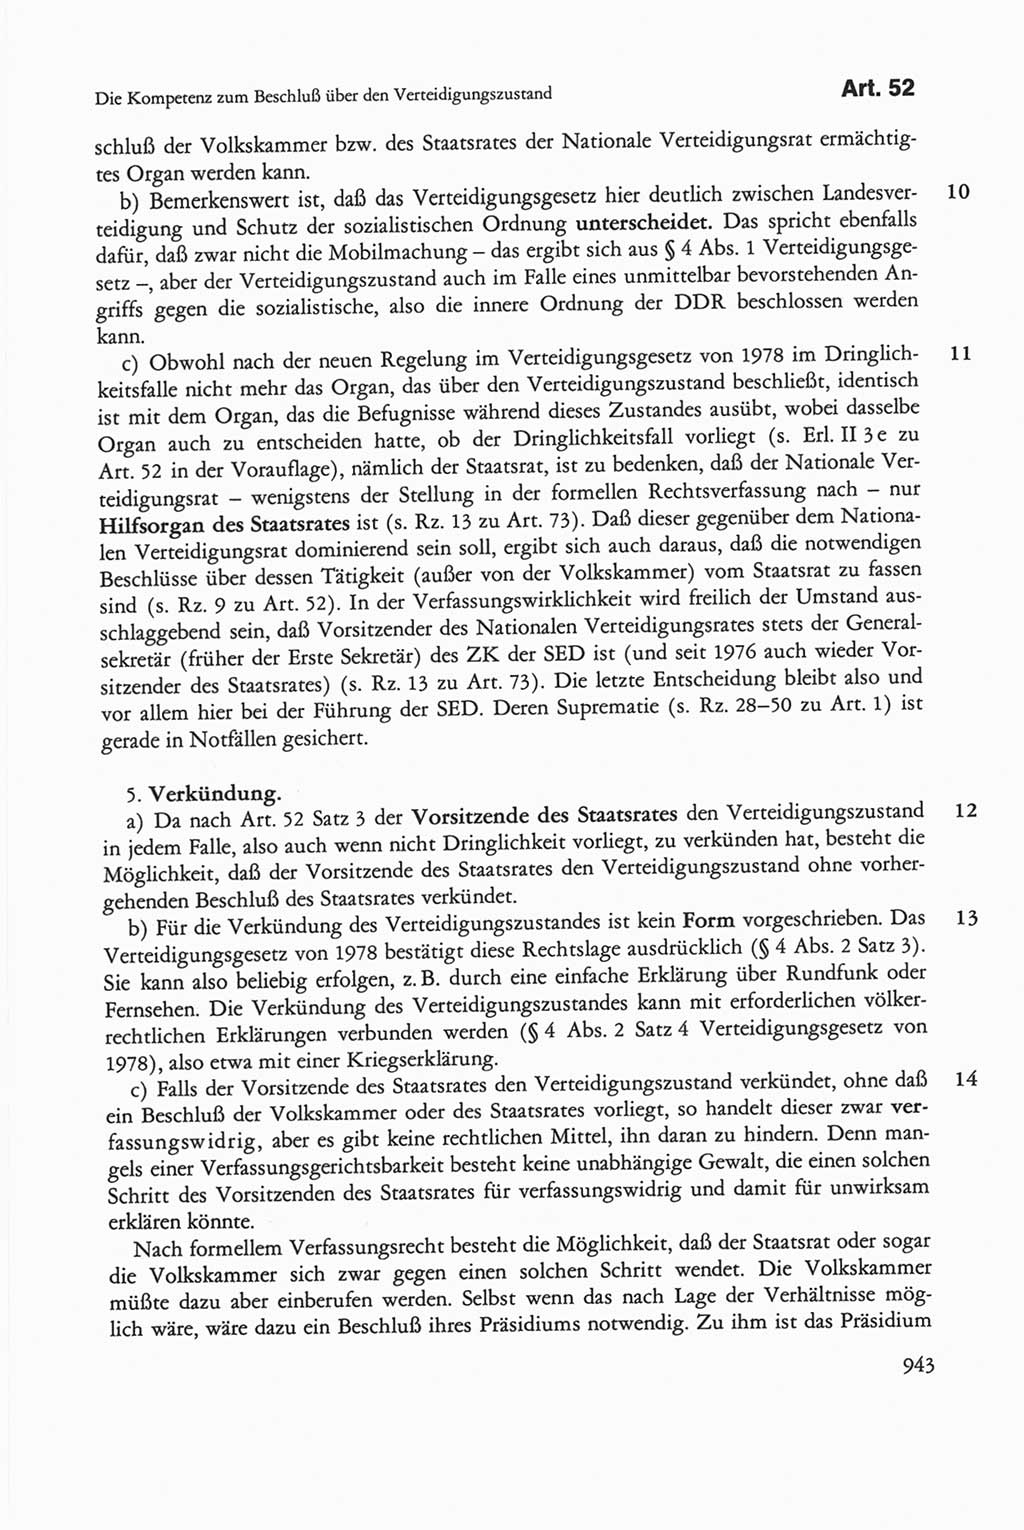 Die sozialistische Verfassung der Deutschen Demokratischen Republik (DDR), Kommentar mit einem Nachtrag 1997, Seite 943 (Soz. Verf. DDR Komm. Nachtr. 1997, S. 943)